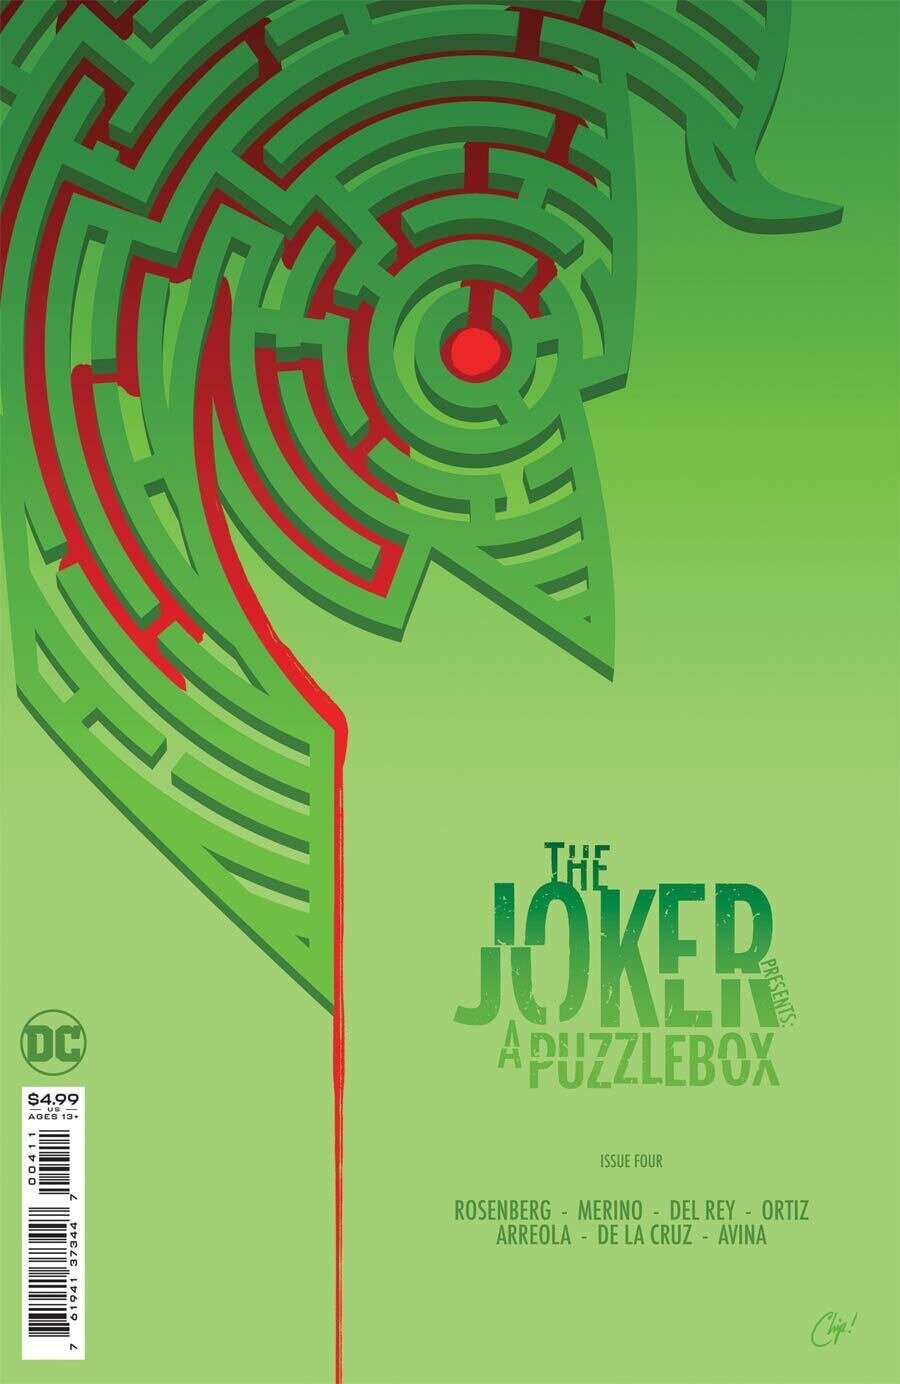 Joker Presents A Puzzlebox #4